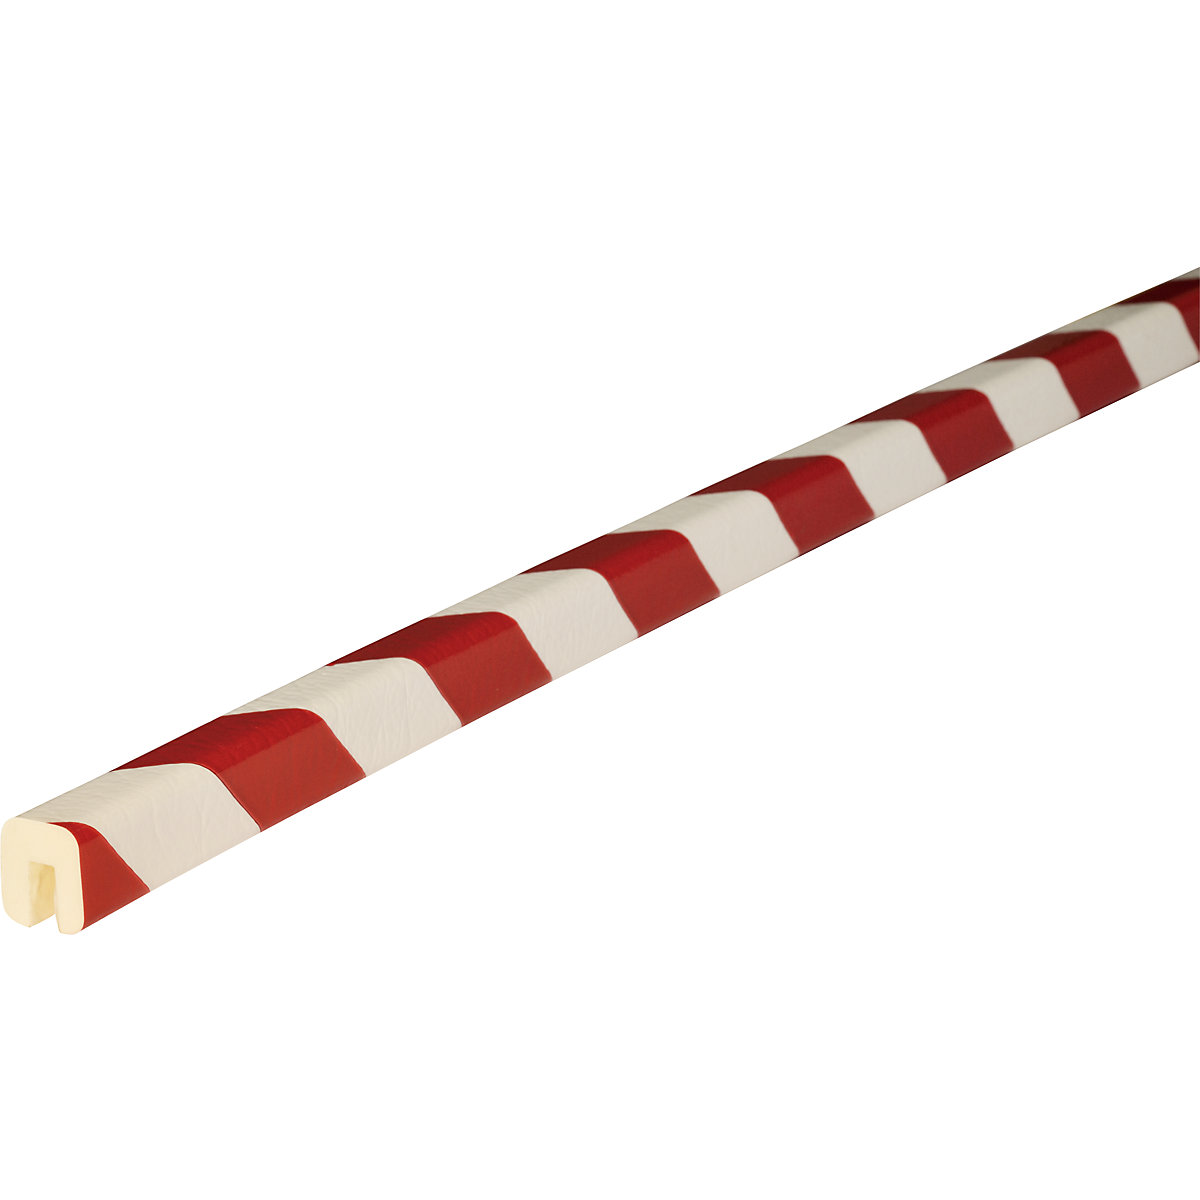 Protection des arêtes Knuffi® – SHG, type G, 1 rouleau de 5 m, rouge / blanc